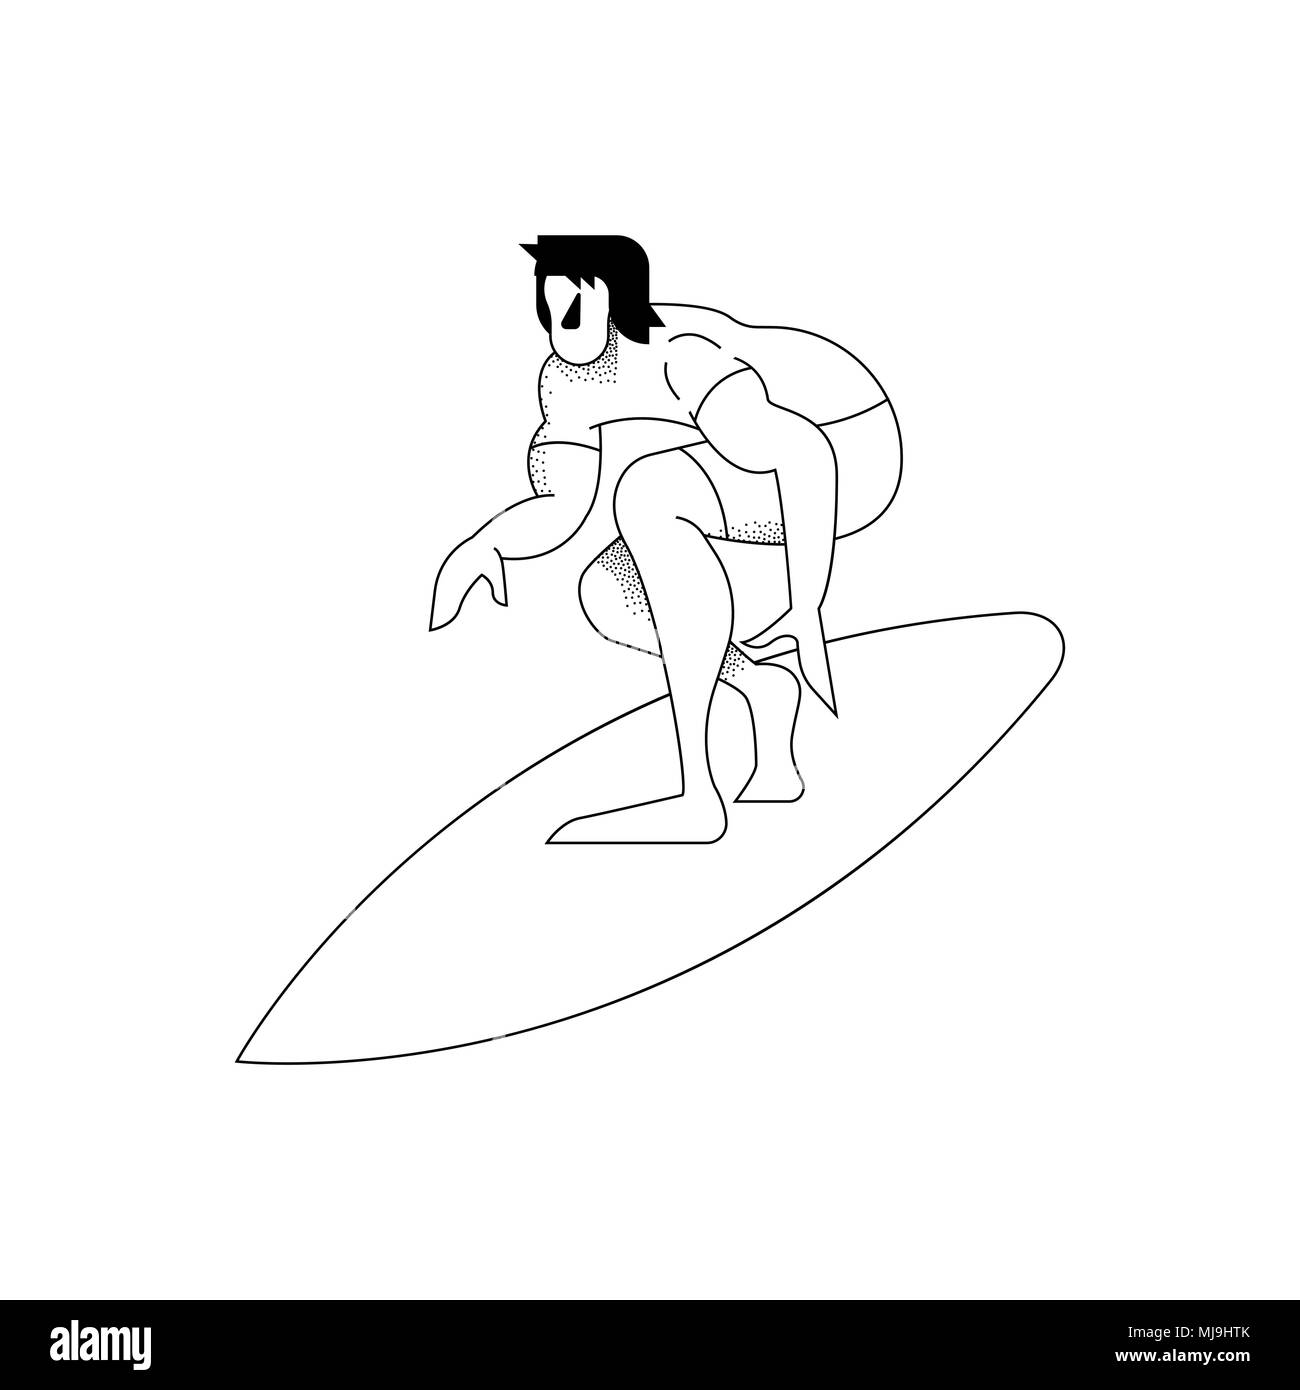 Man surfen, modernen schwarzen und weißen Umrisse Stil. Surfer fässerfüllen Pose in Aktion über isolierte Hintergrund. EPS 10 Vektor. Stock Vektor